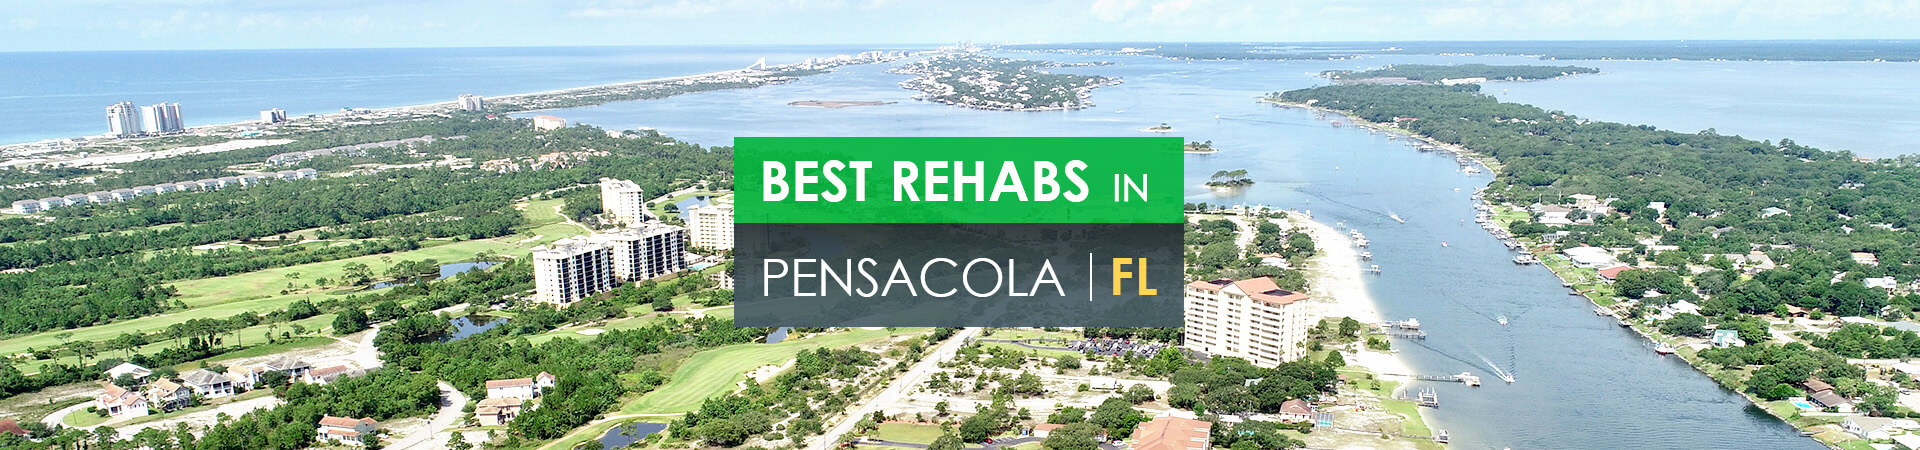 Best rehabs in Pensacola, FL